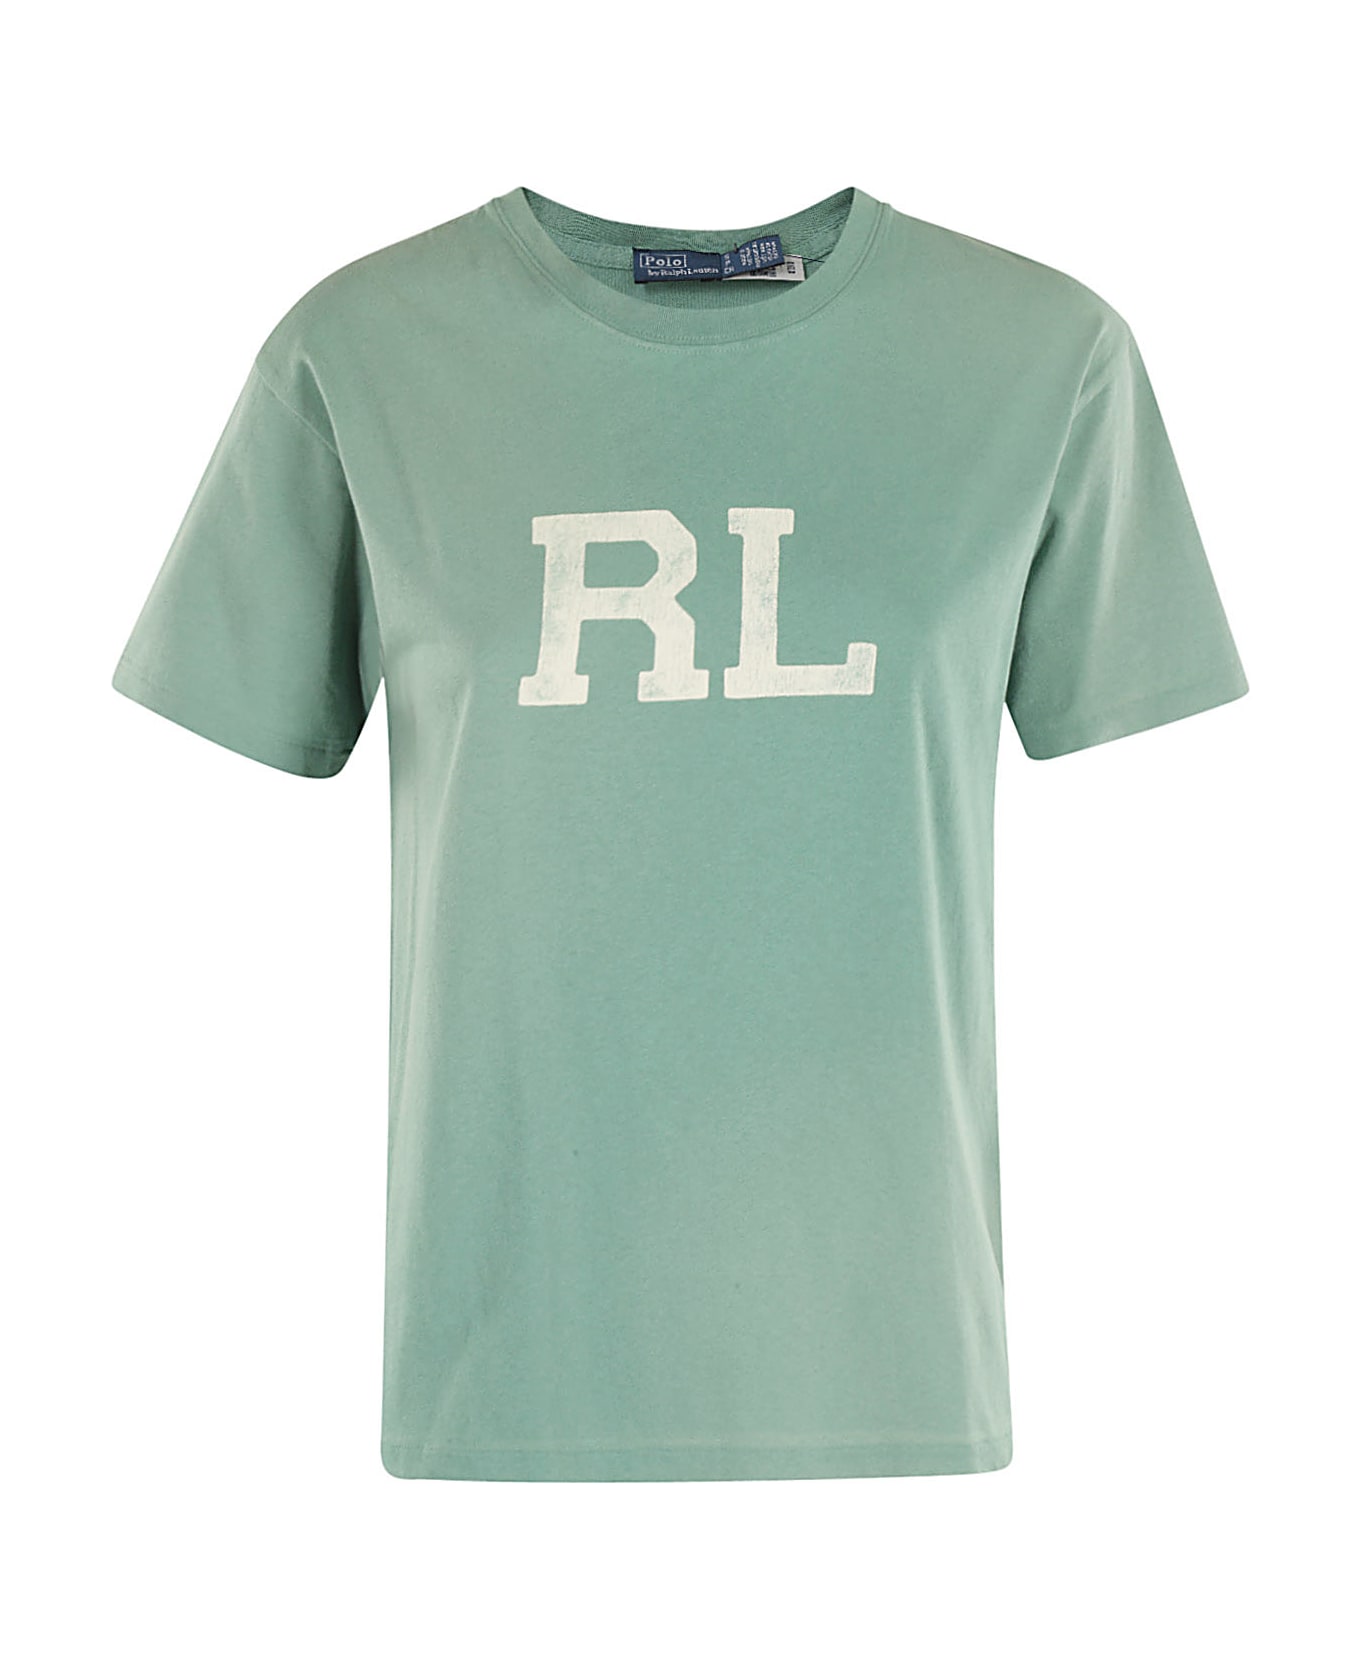 Polo Ralph Lauren Rl Pride - Fairway Green Tシャツ